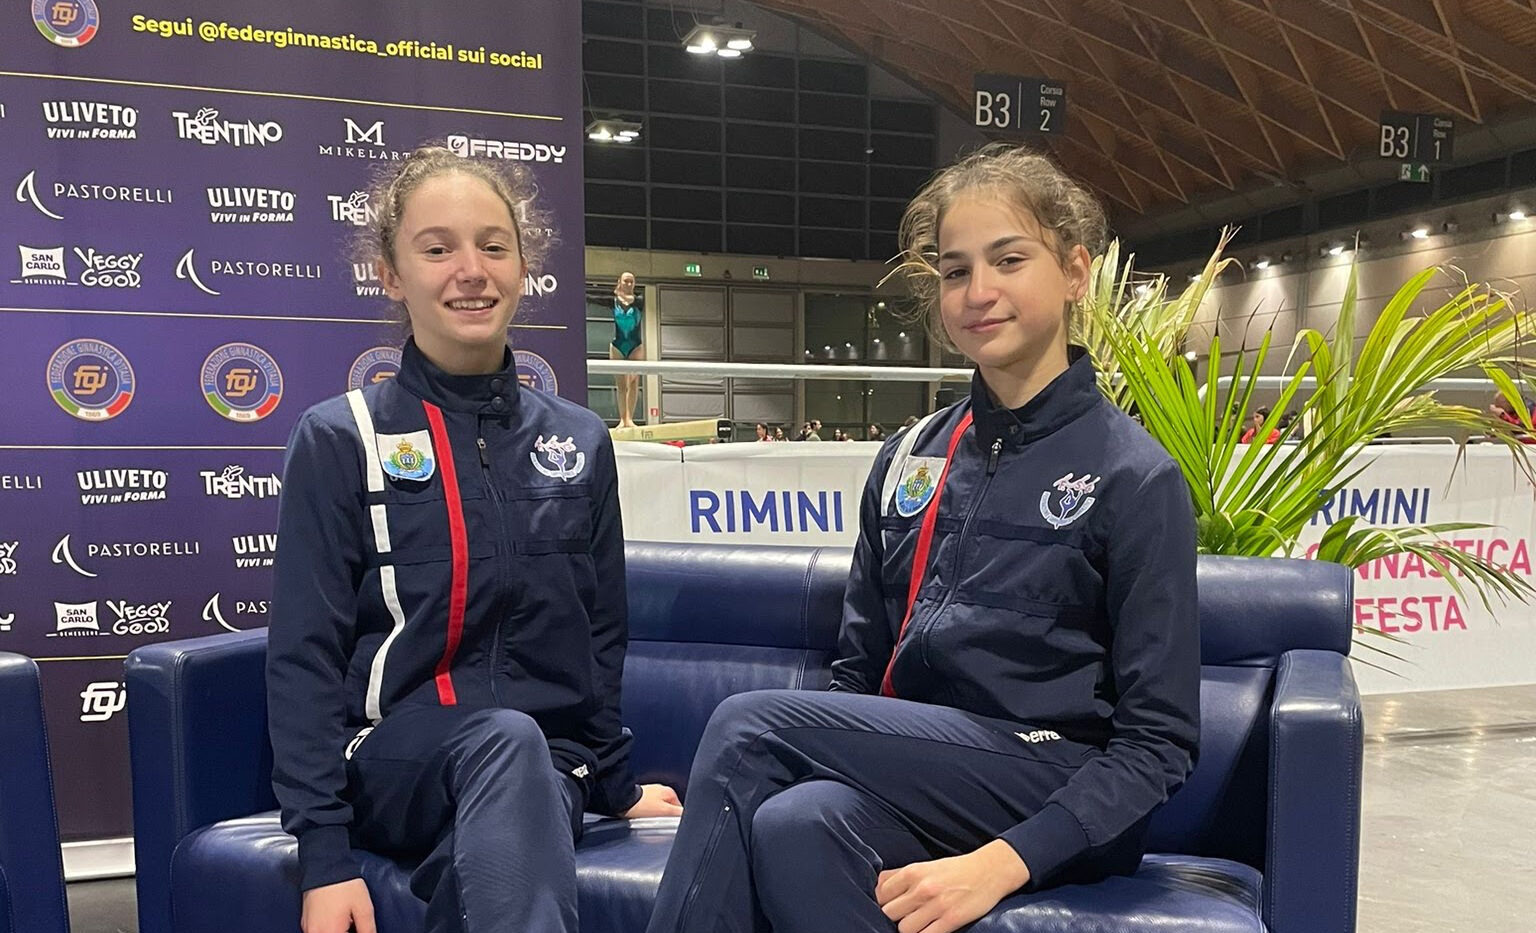 Soddisfazioni internazionali per due giovani ginnaste di San Marino